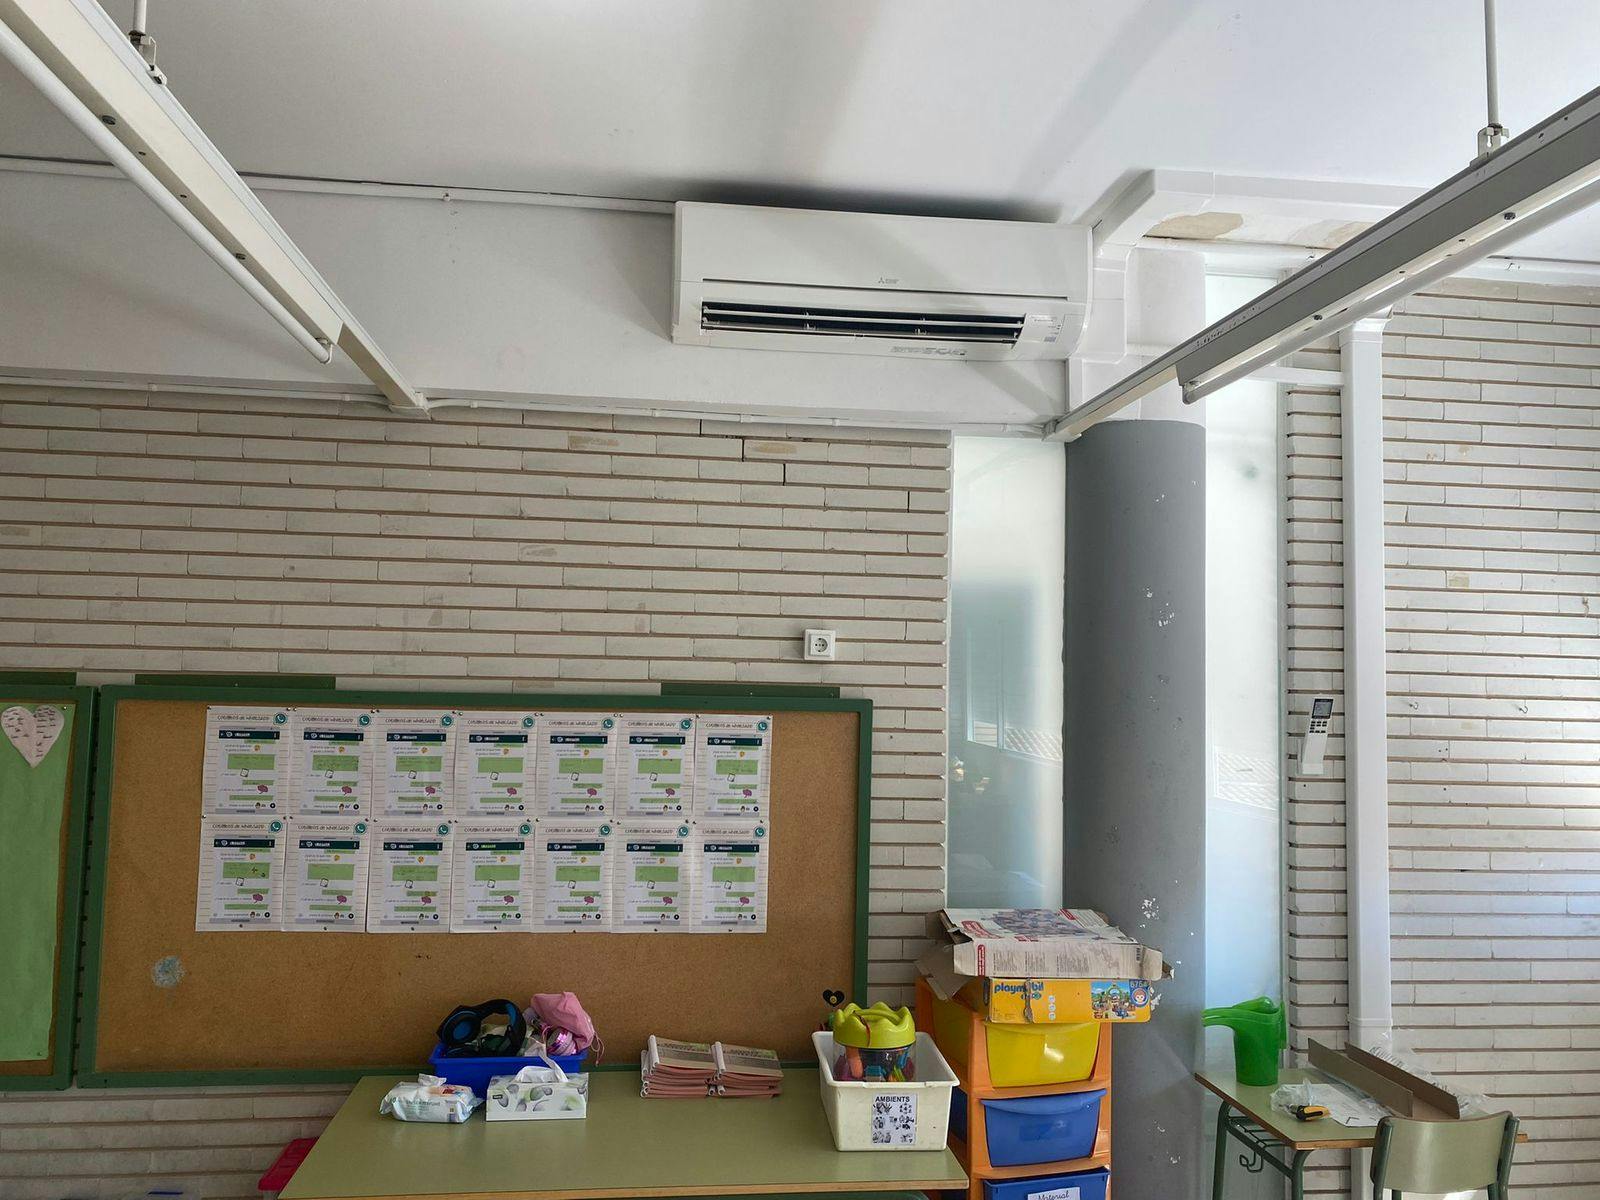 L'Ajuntament de l’Ampolla instal·la aires condicionats a les aules de l’escola Mediterrani